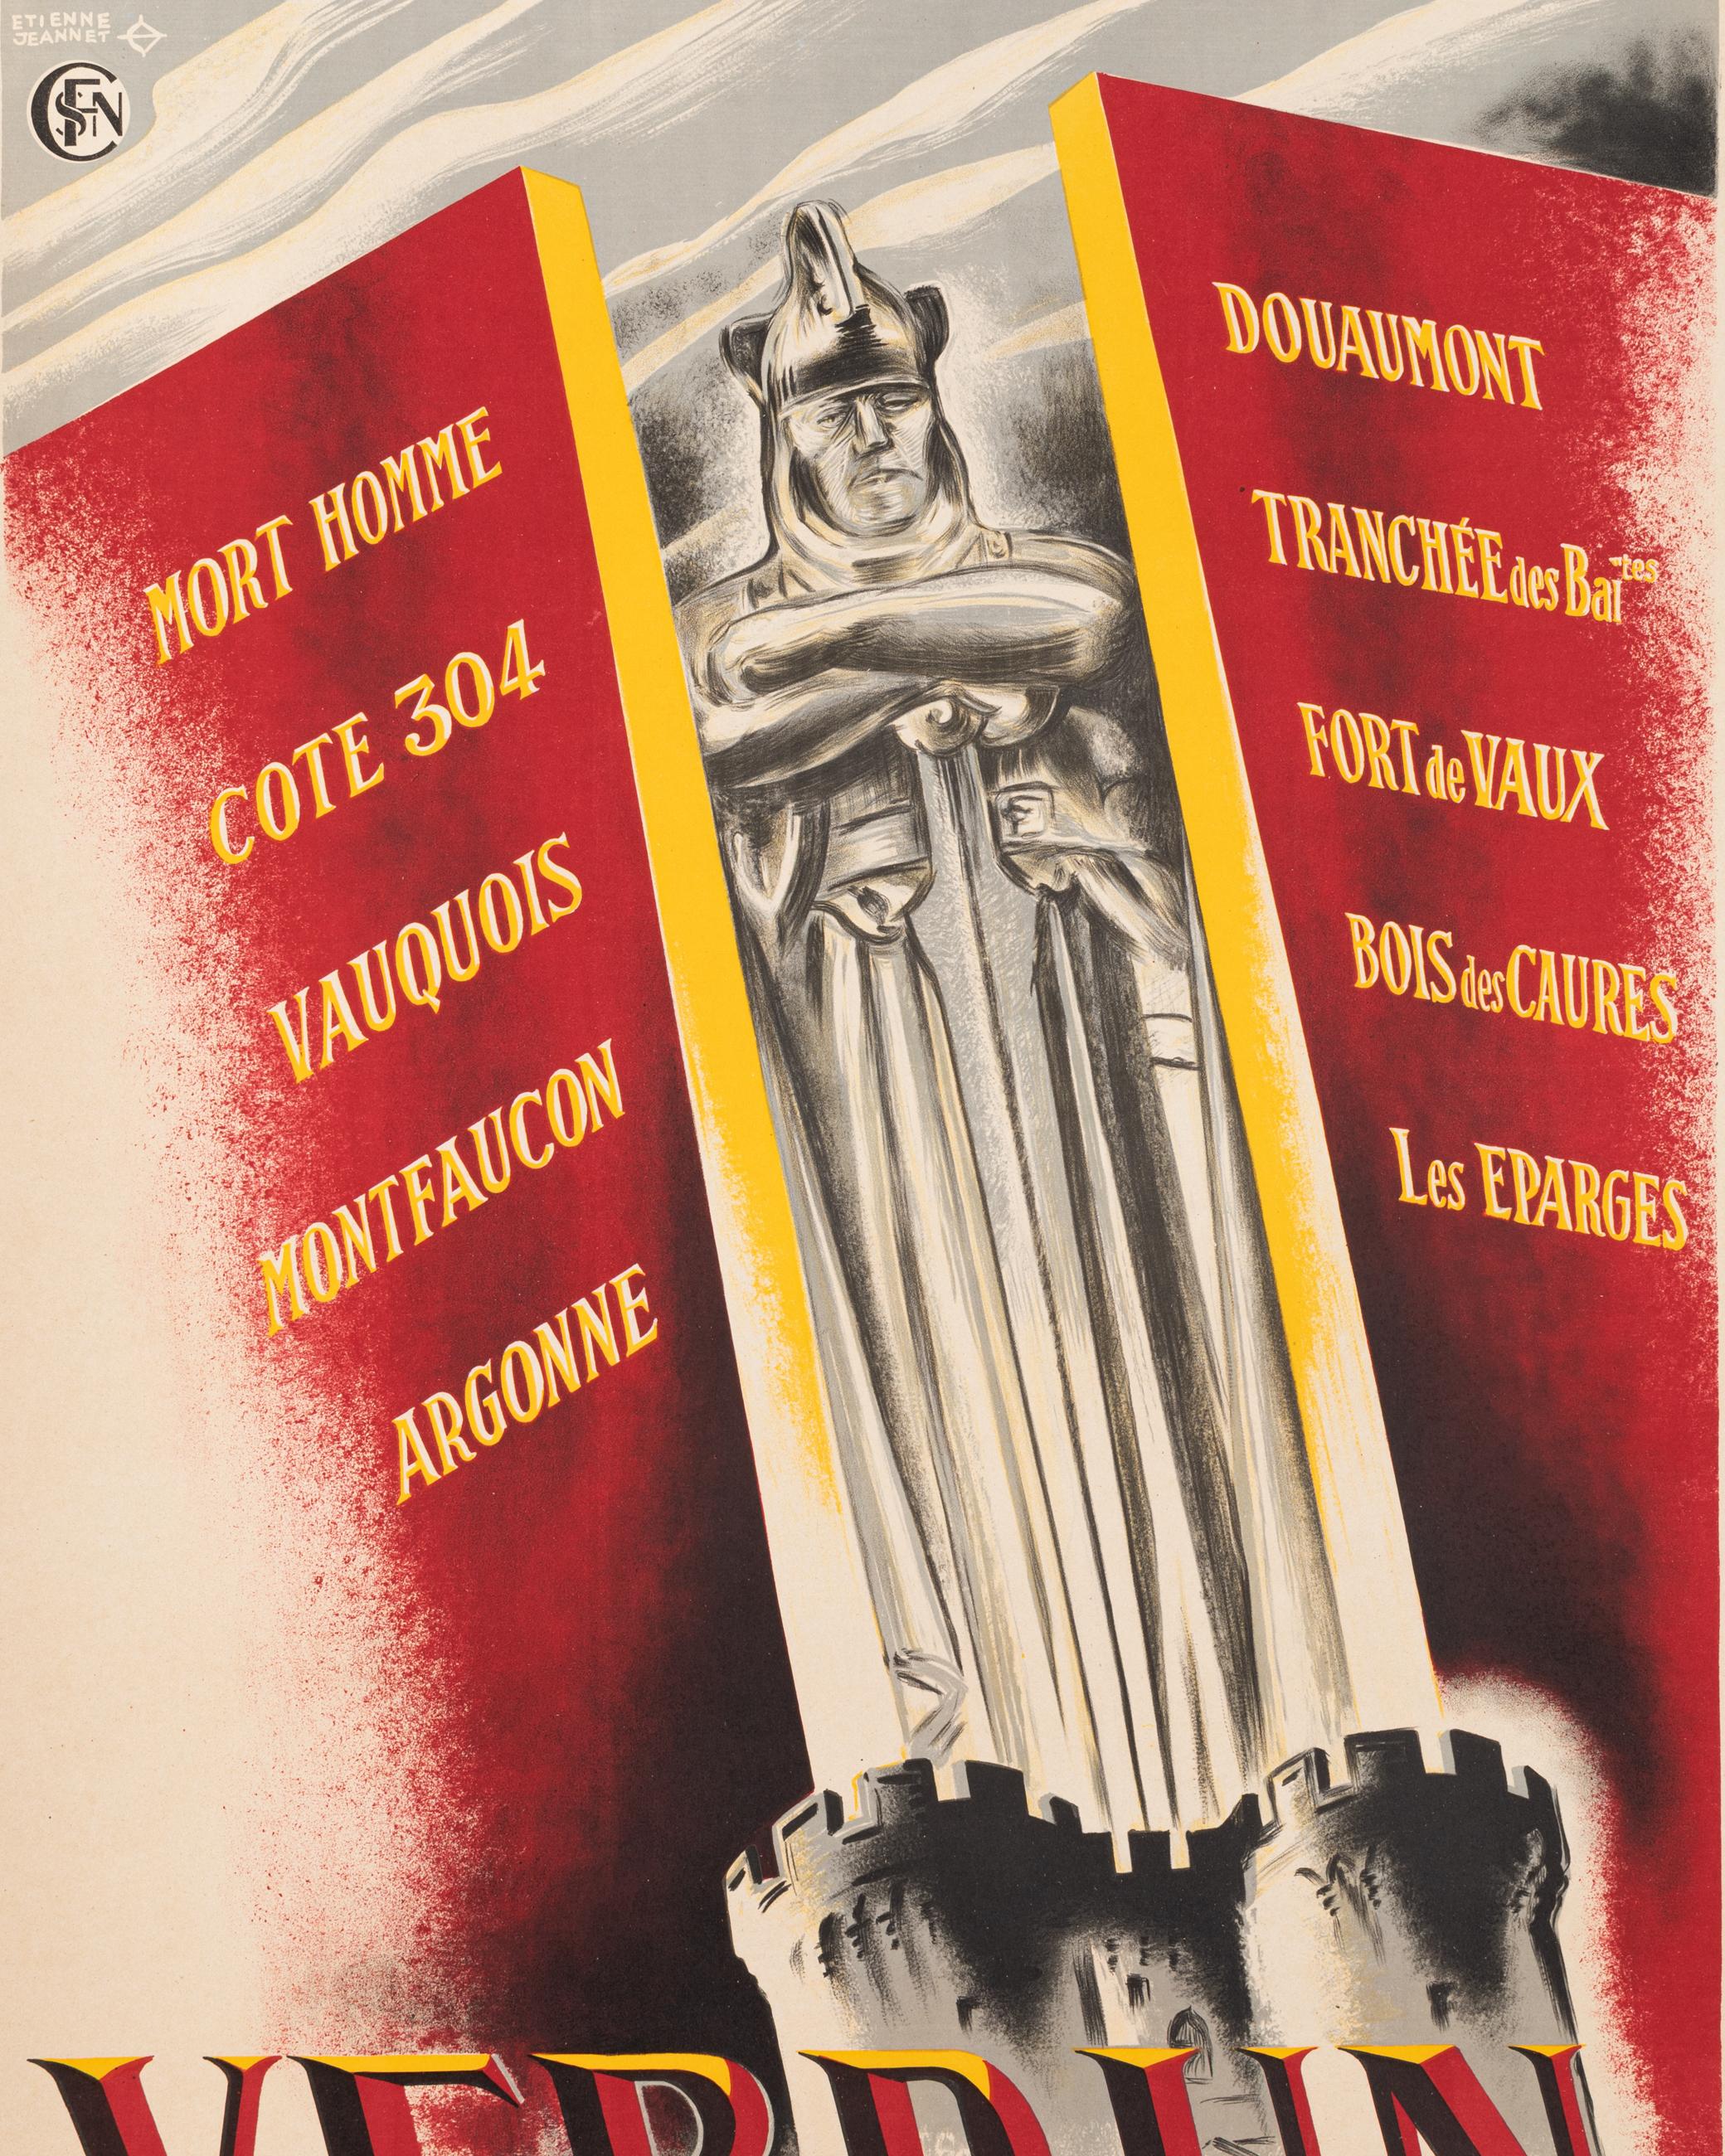 Affiche originale Vintage By pour les chemins de fer français sur Verdun créée par Etienne Jeannet en 1930.

Artistics : Jeannet Etienne
Titre : Verdun - Forteresse historique - Centre de Tourisme
Date : circa 1930
Taille (l x h) : 24.8 x 39.2 in /